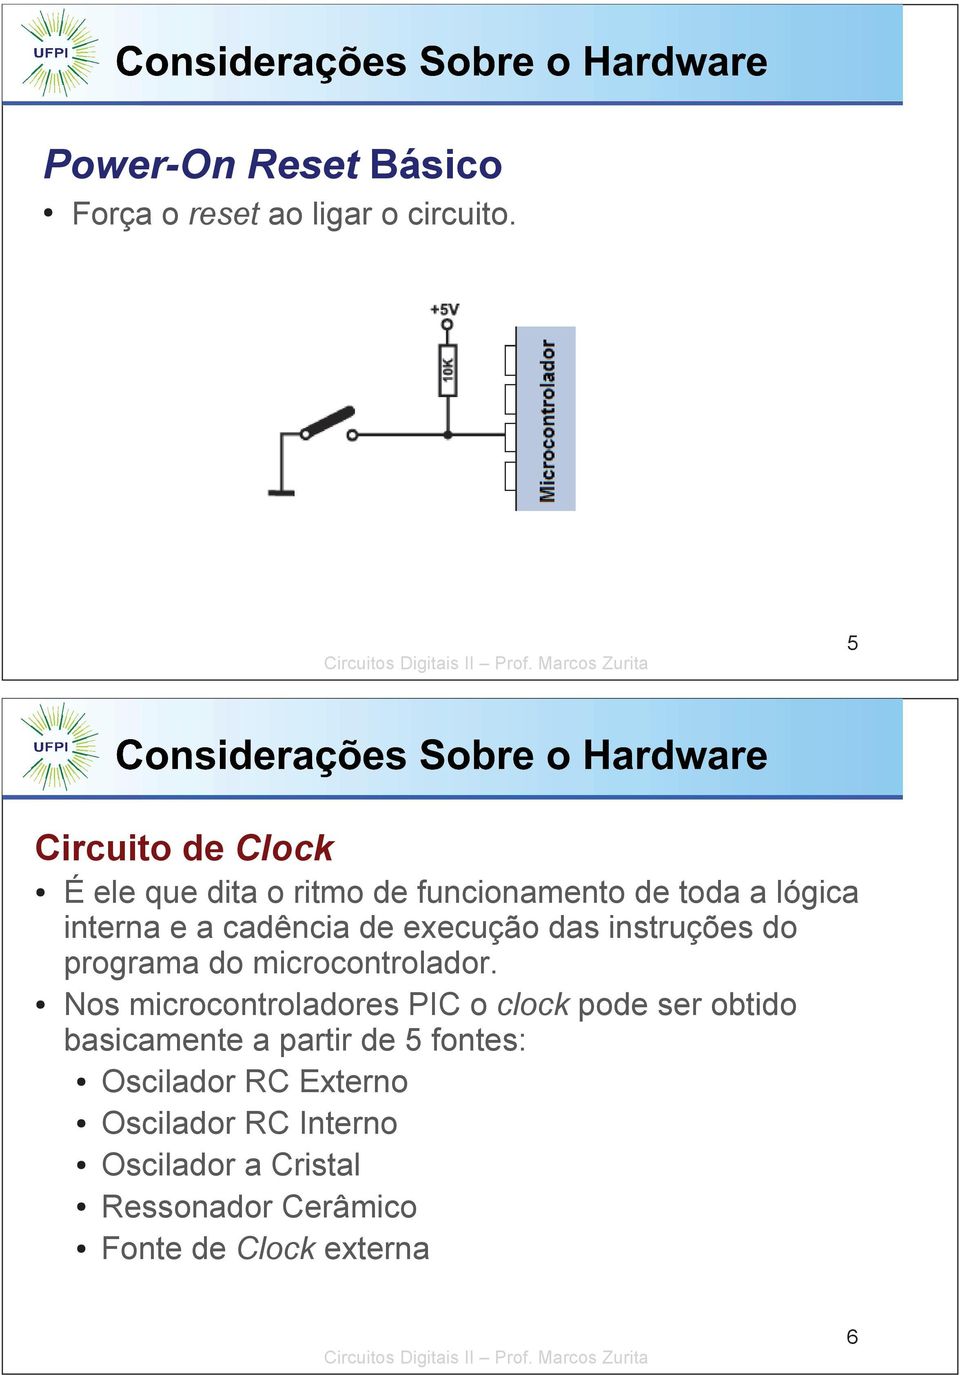 execução das instruções do programa do microcontrolador.